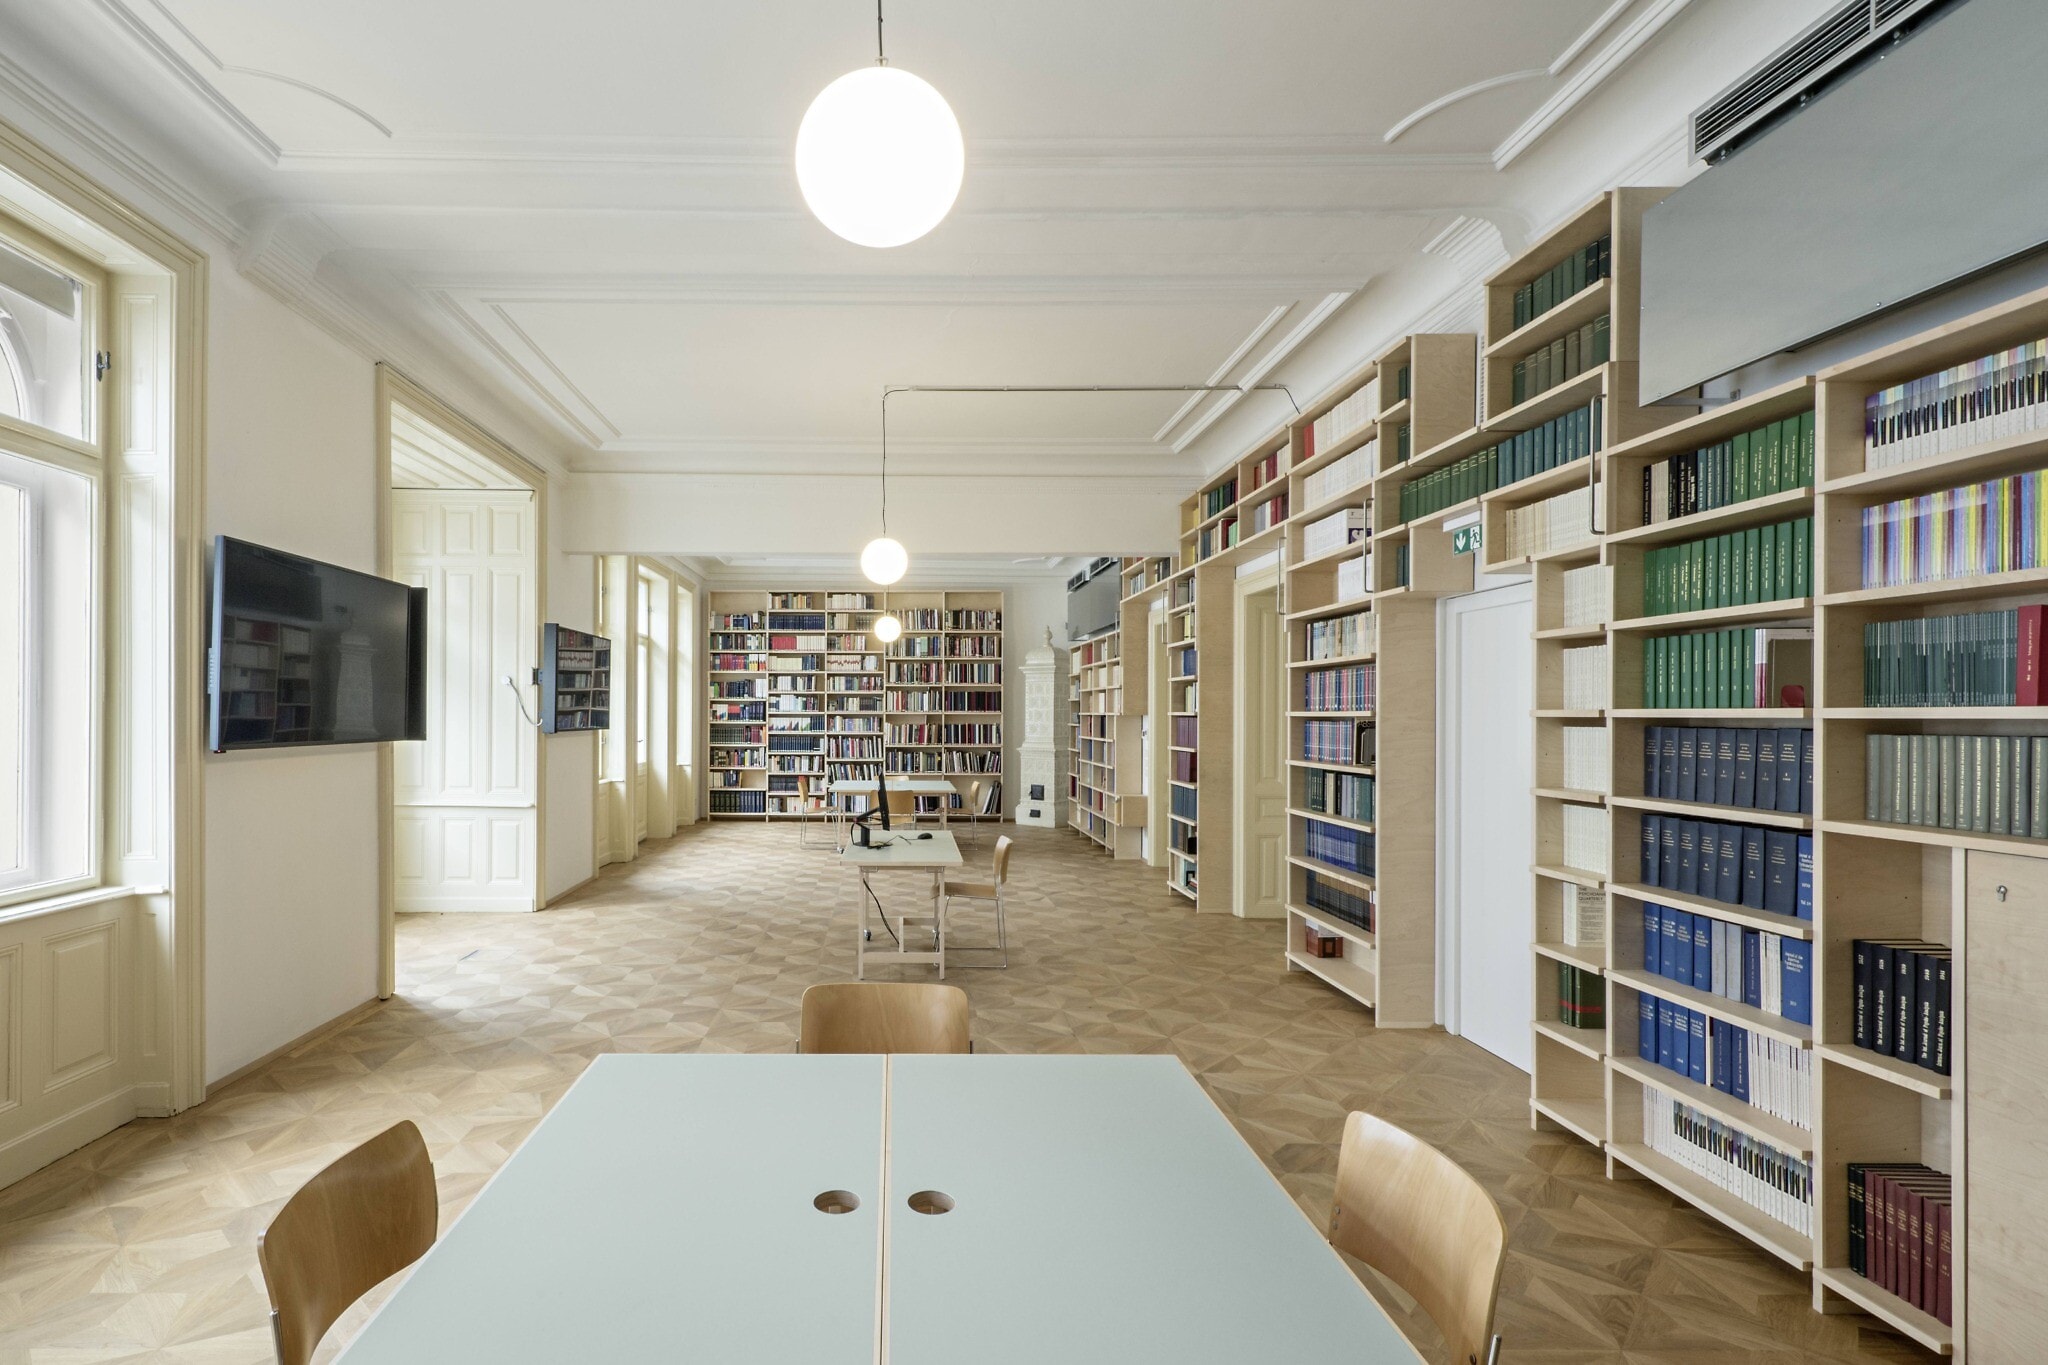 חדר הקריאה בספרייה במוזאון זיגמונד פרויד בווינה (צילום: הרתה הורנאוס/קרן זיגמונד פרויד)